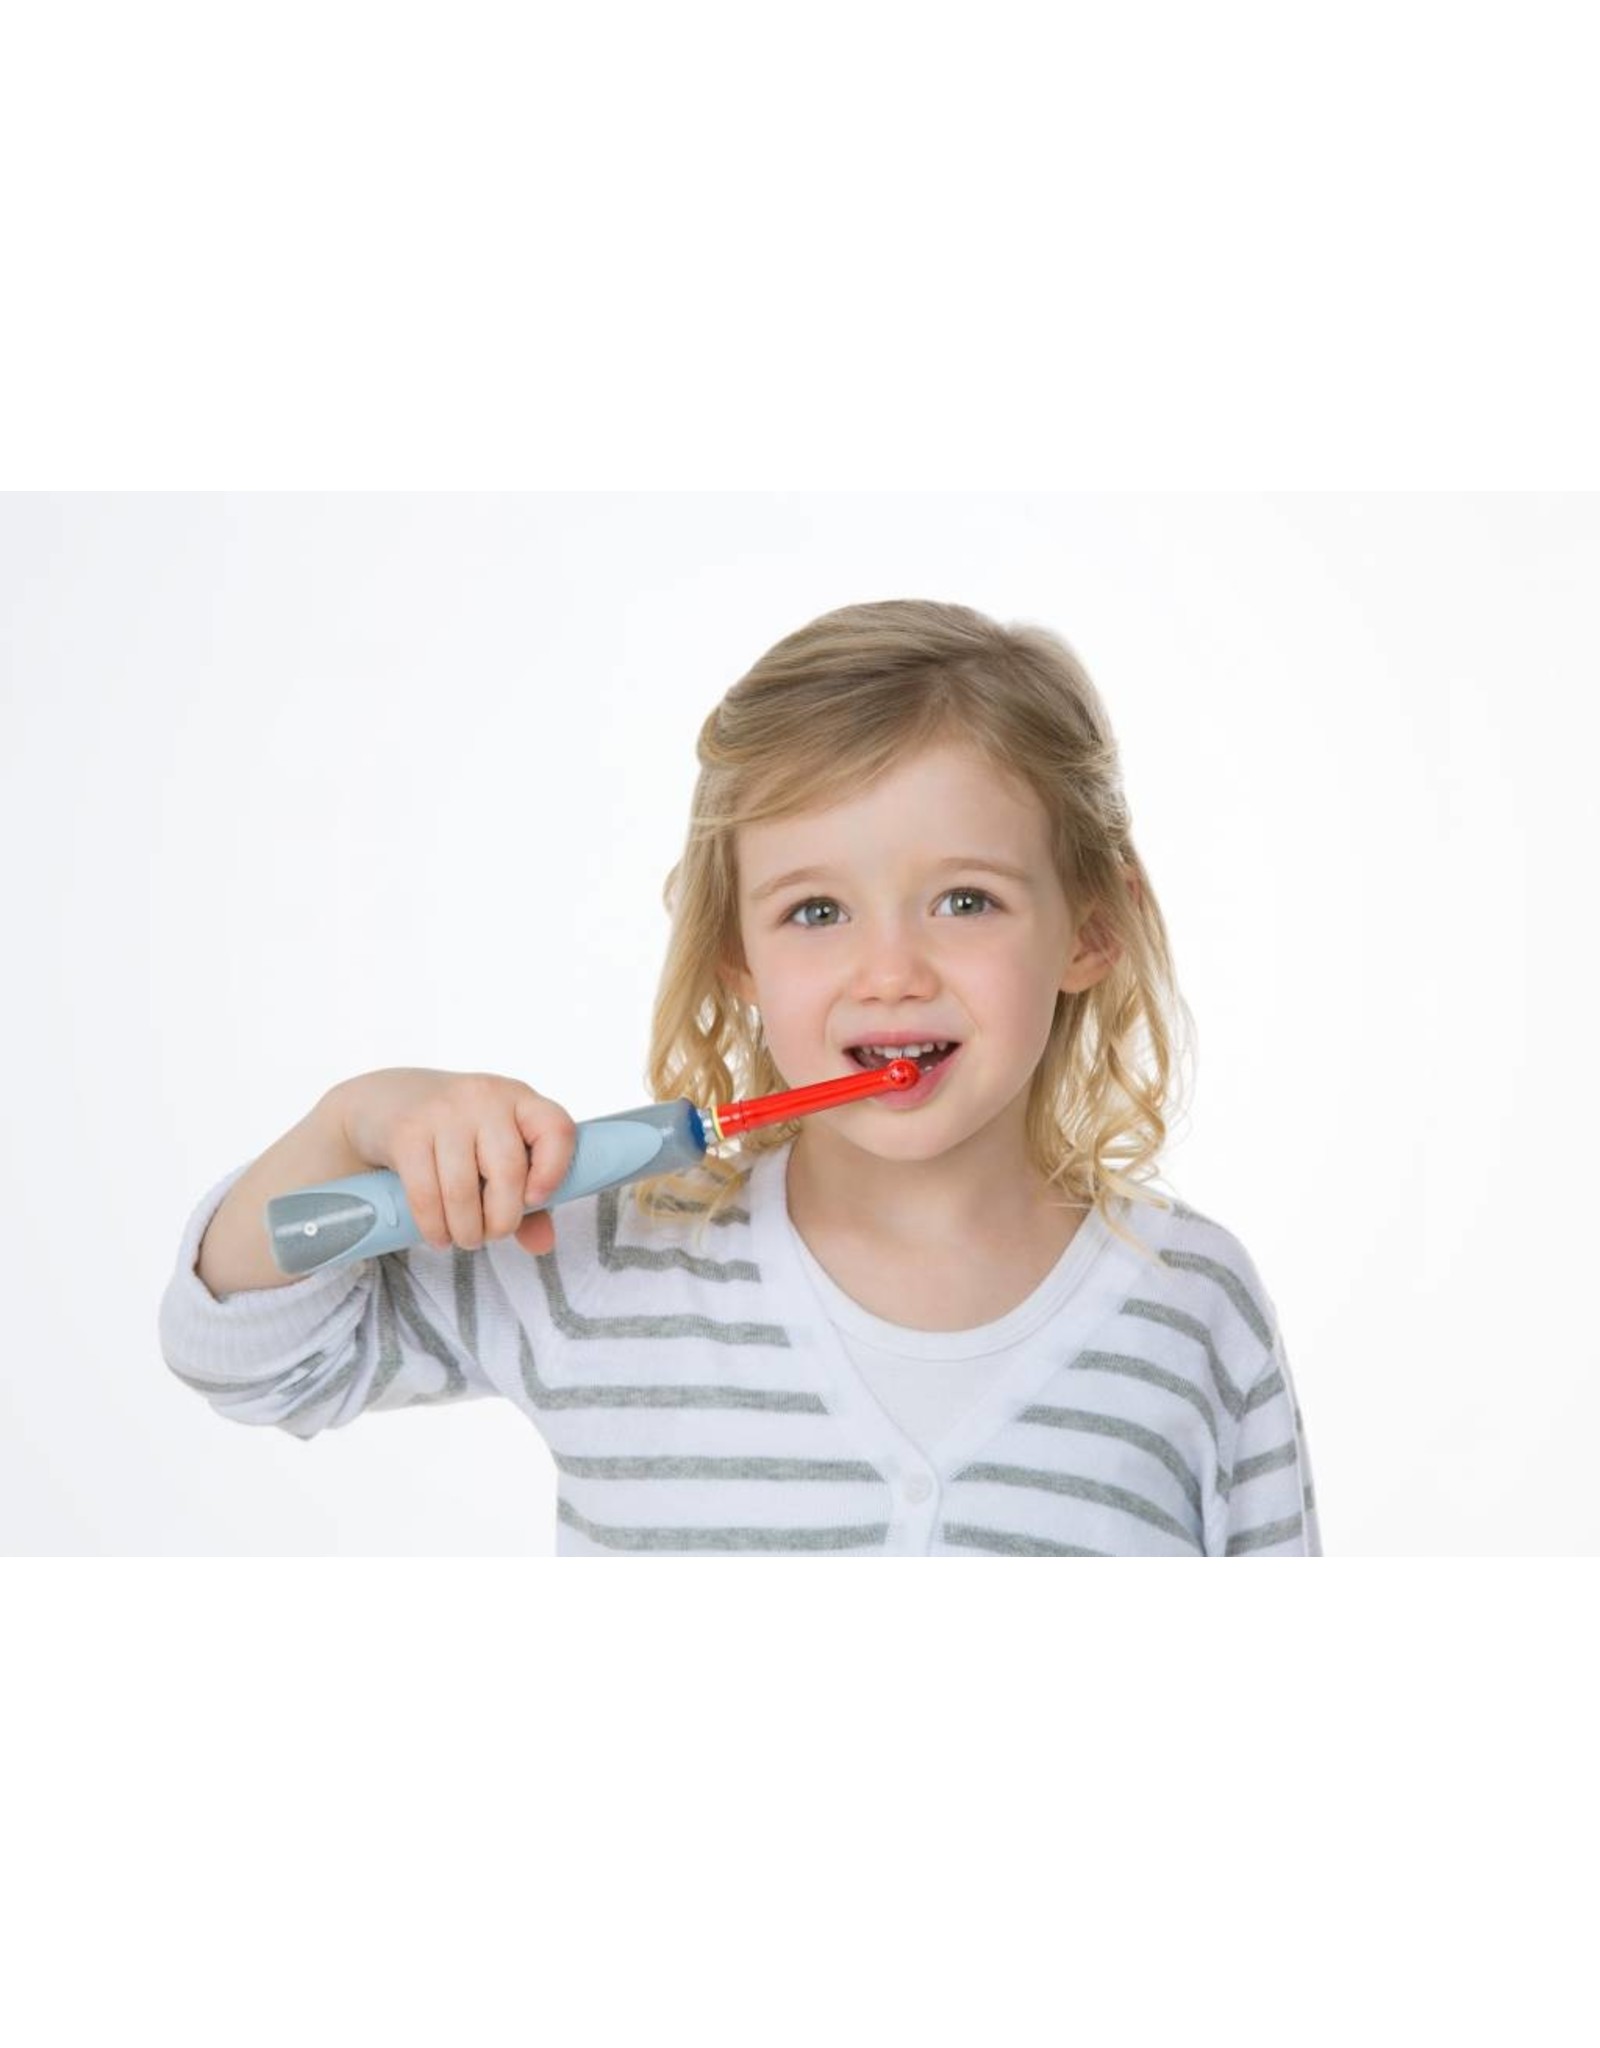 4 Kinder Bürstenköpfe - geeignet zwischen von 3 bis 7 Jahren für Oral-B (versandkostenfrei)